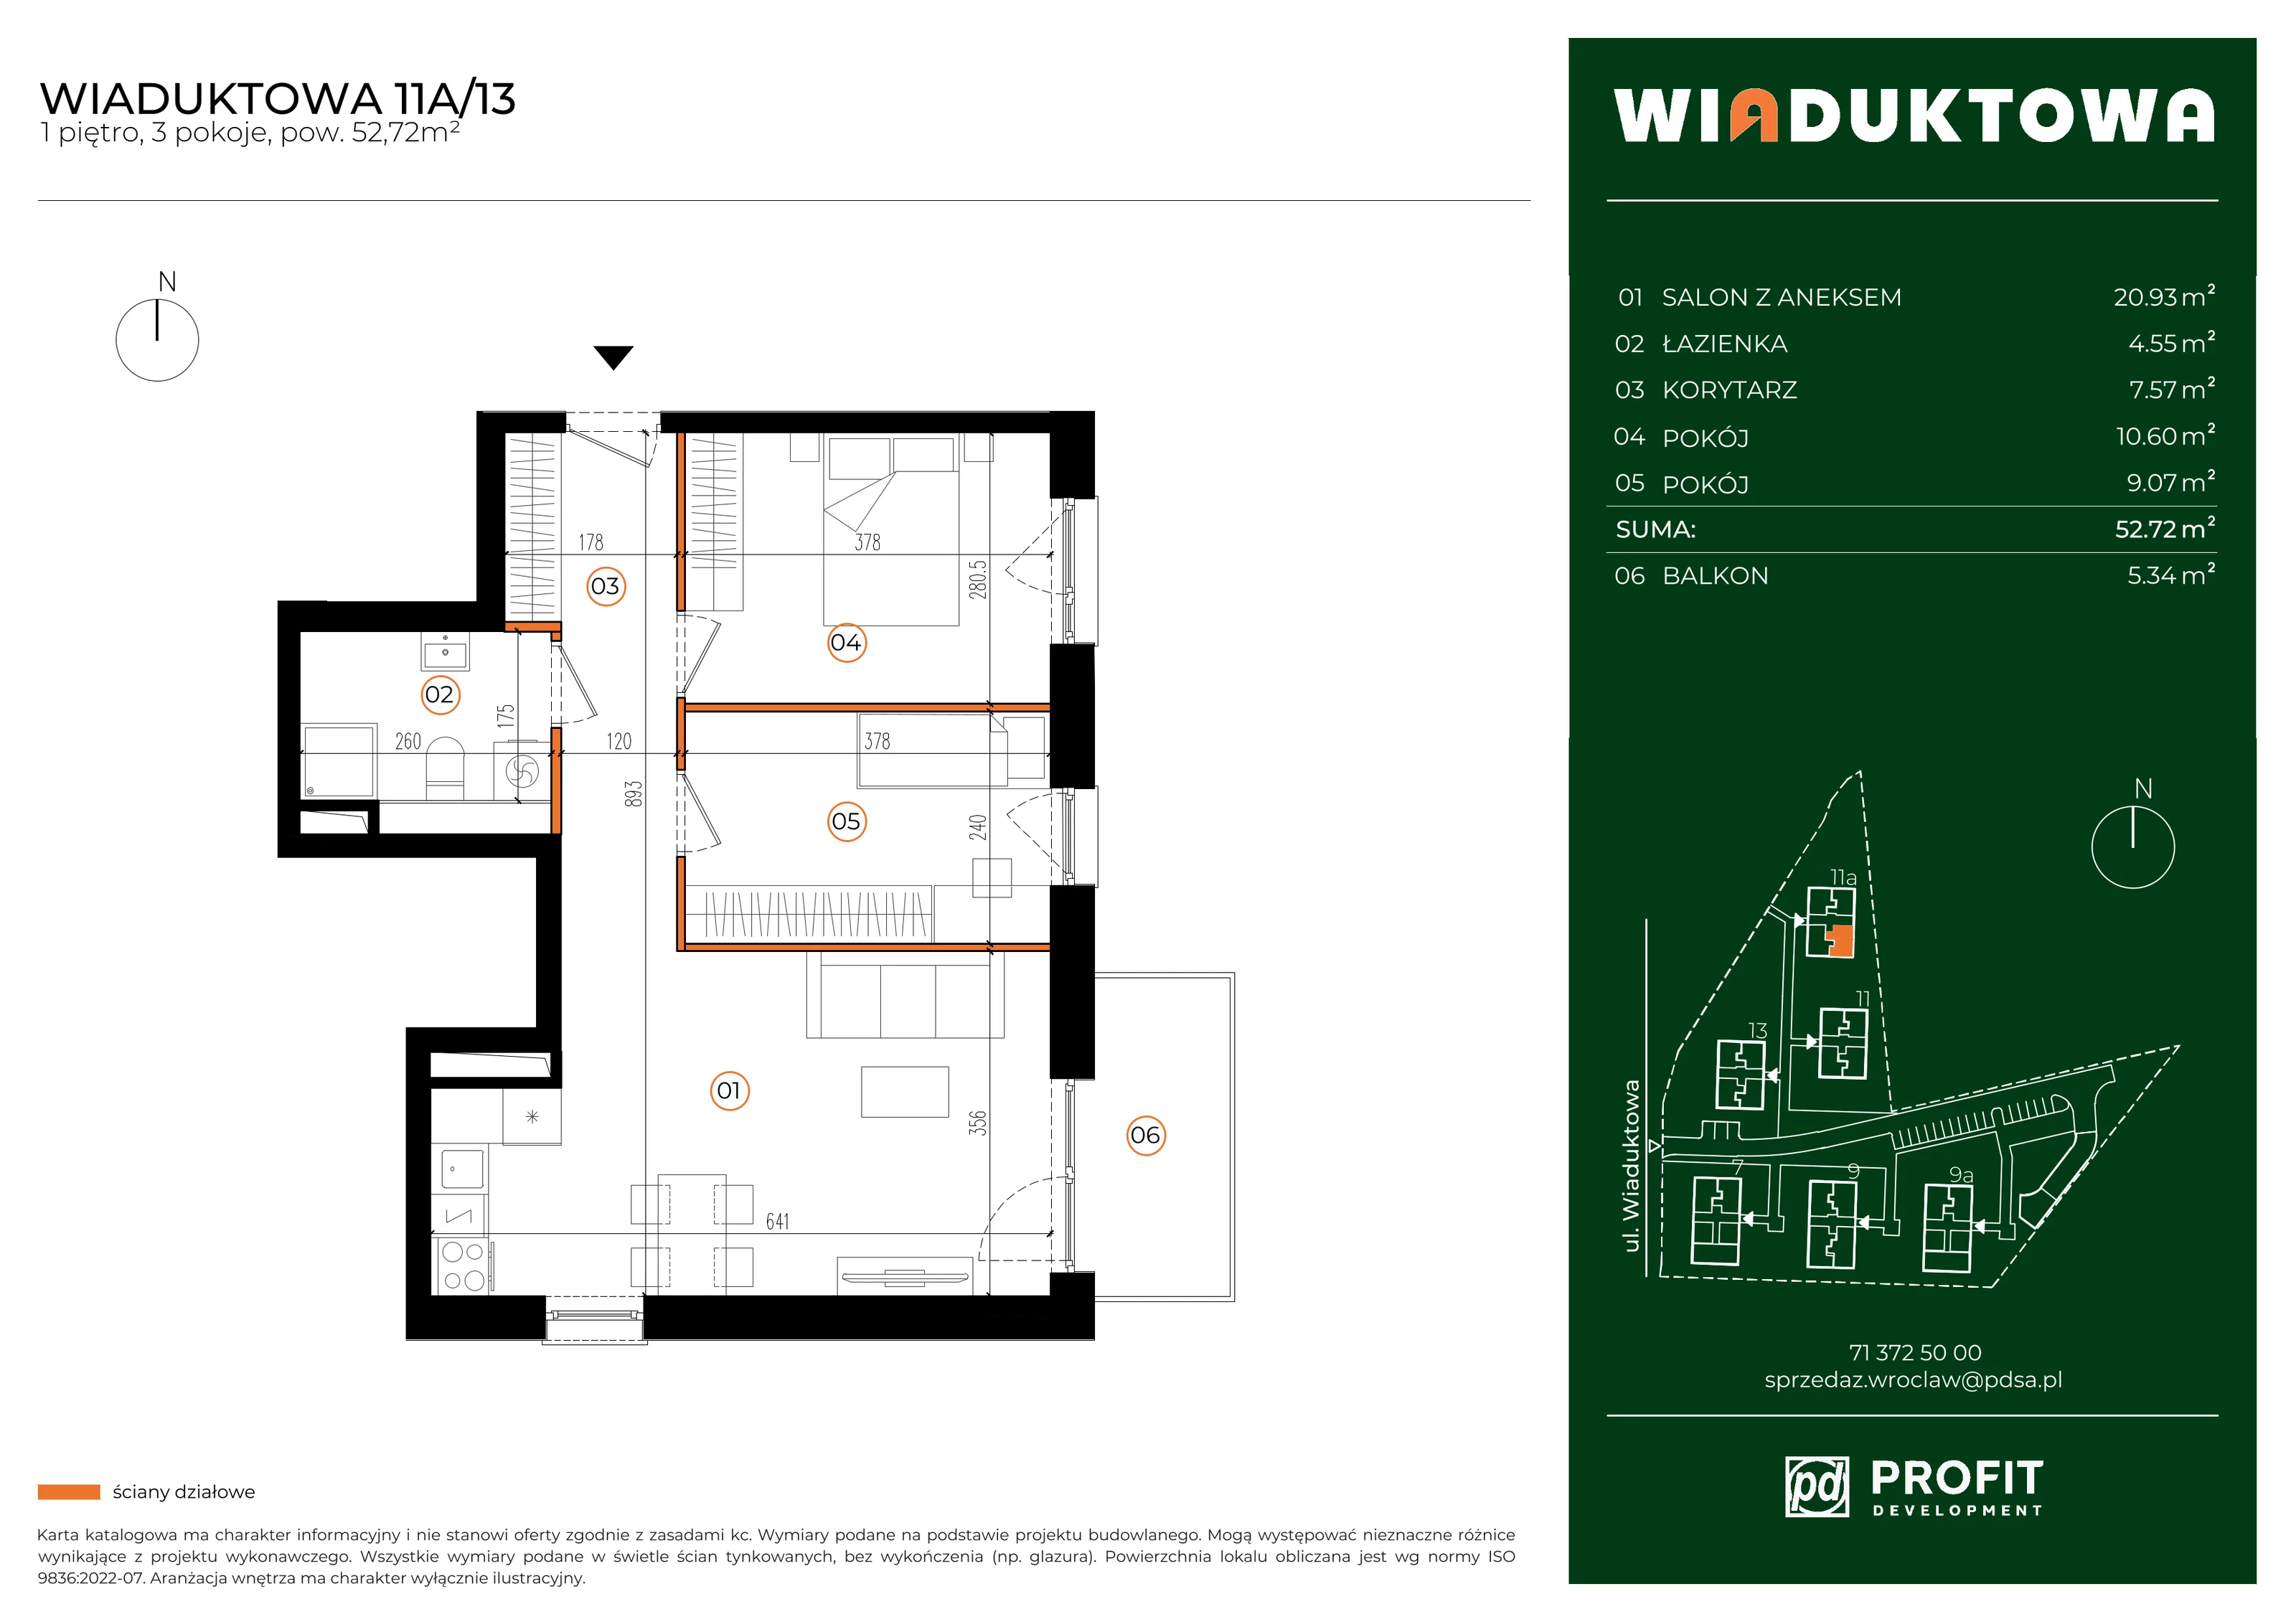 Mieszkanie 52,72 m², piętro 1, oferta nr WI/11A/13, Wiaduktowa, Wrocław, Krzyki-Partynice, Krzyki, ul. Wiaduktowa